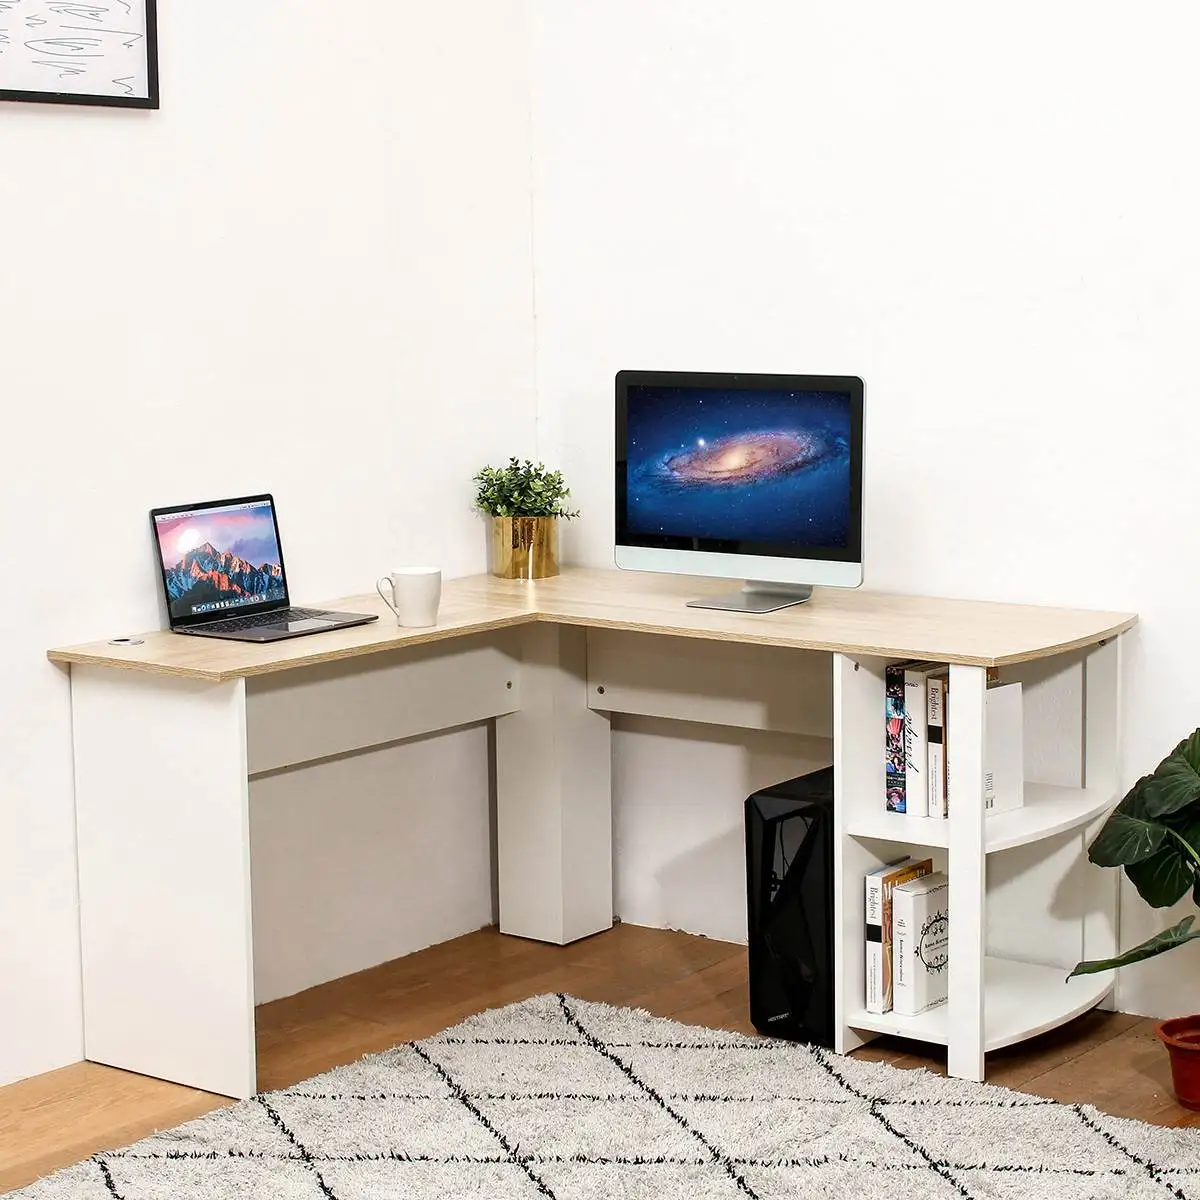 

Угловой стол для ноутбука 2 в 1, L-образный, с полками для книг, письменный стол, офисная мебель, письменный стол, доставка США